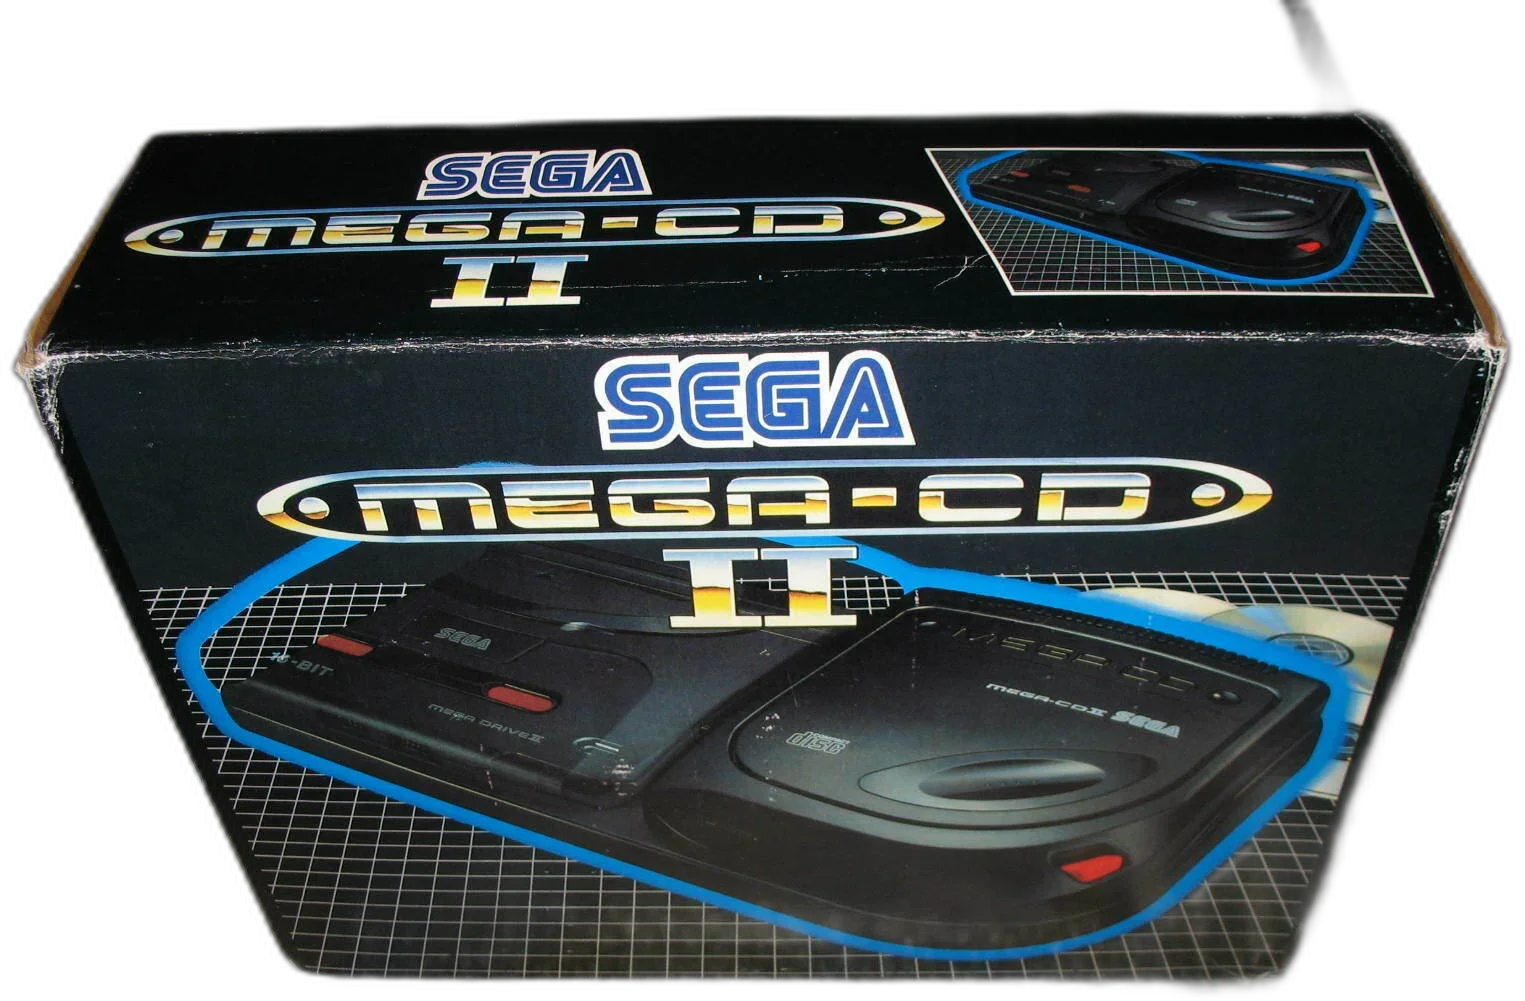 Sega Mega CD Model 2 Console [EU]